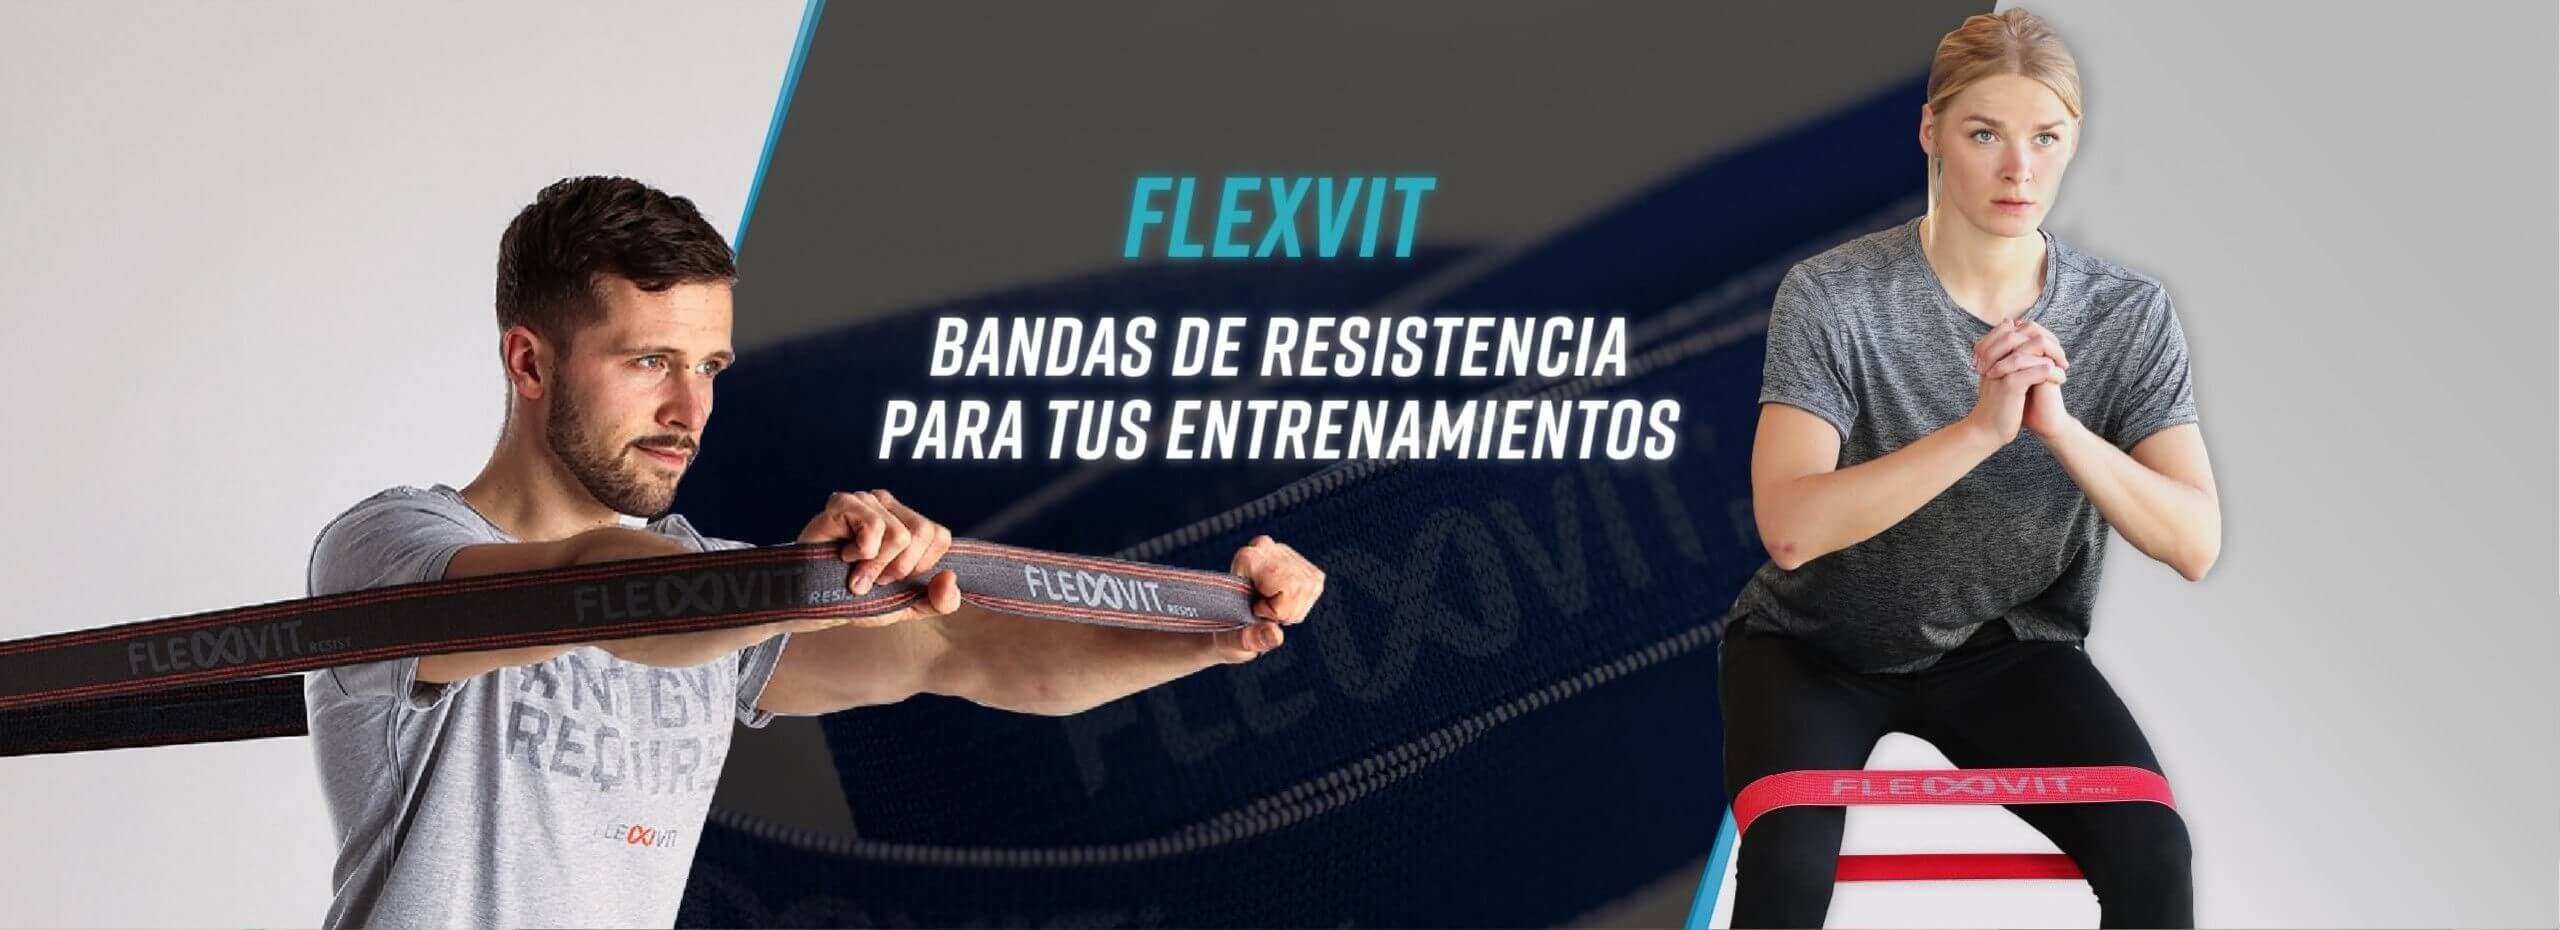 Bandas de resistencia FLEXVIT